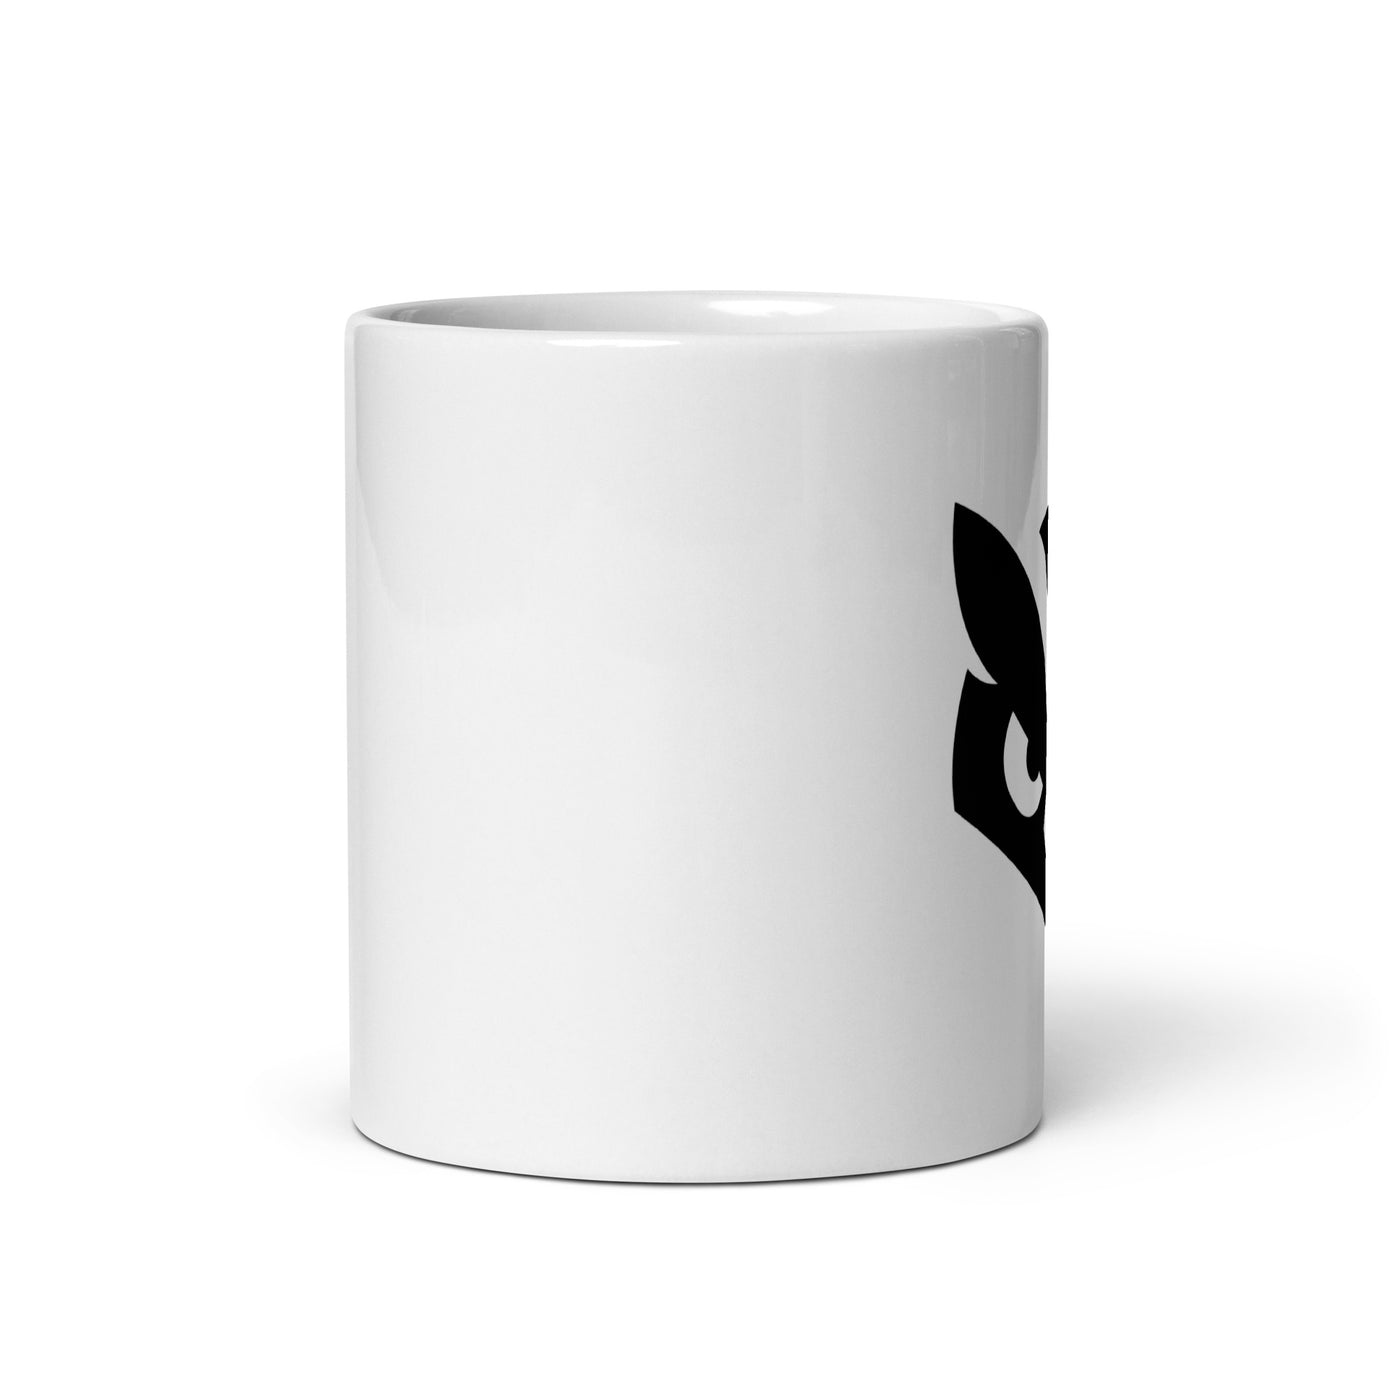 Enchantas White glossy mug